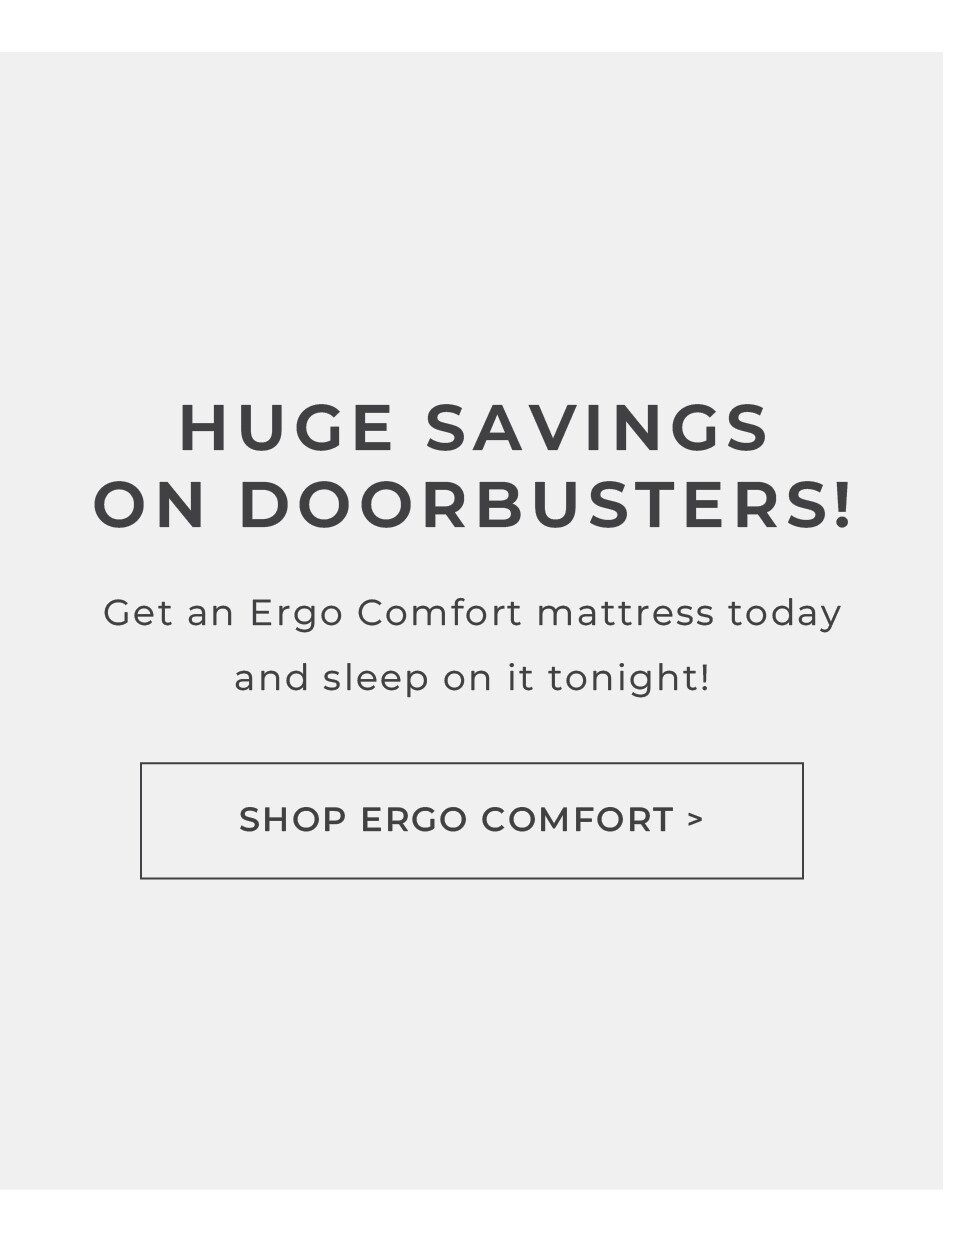 Shop the Ergo mattress deals.